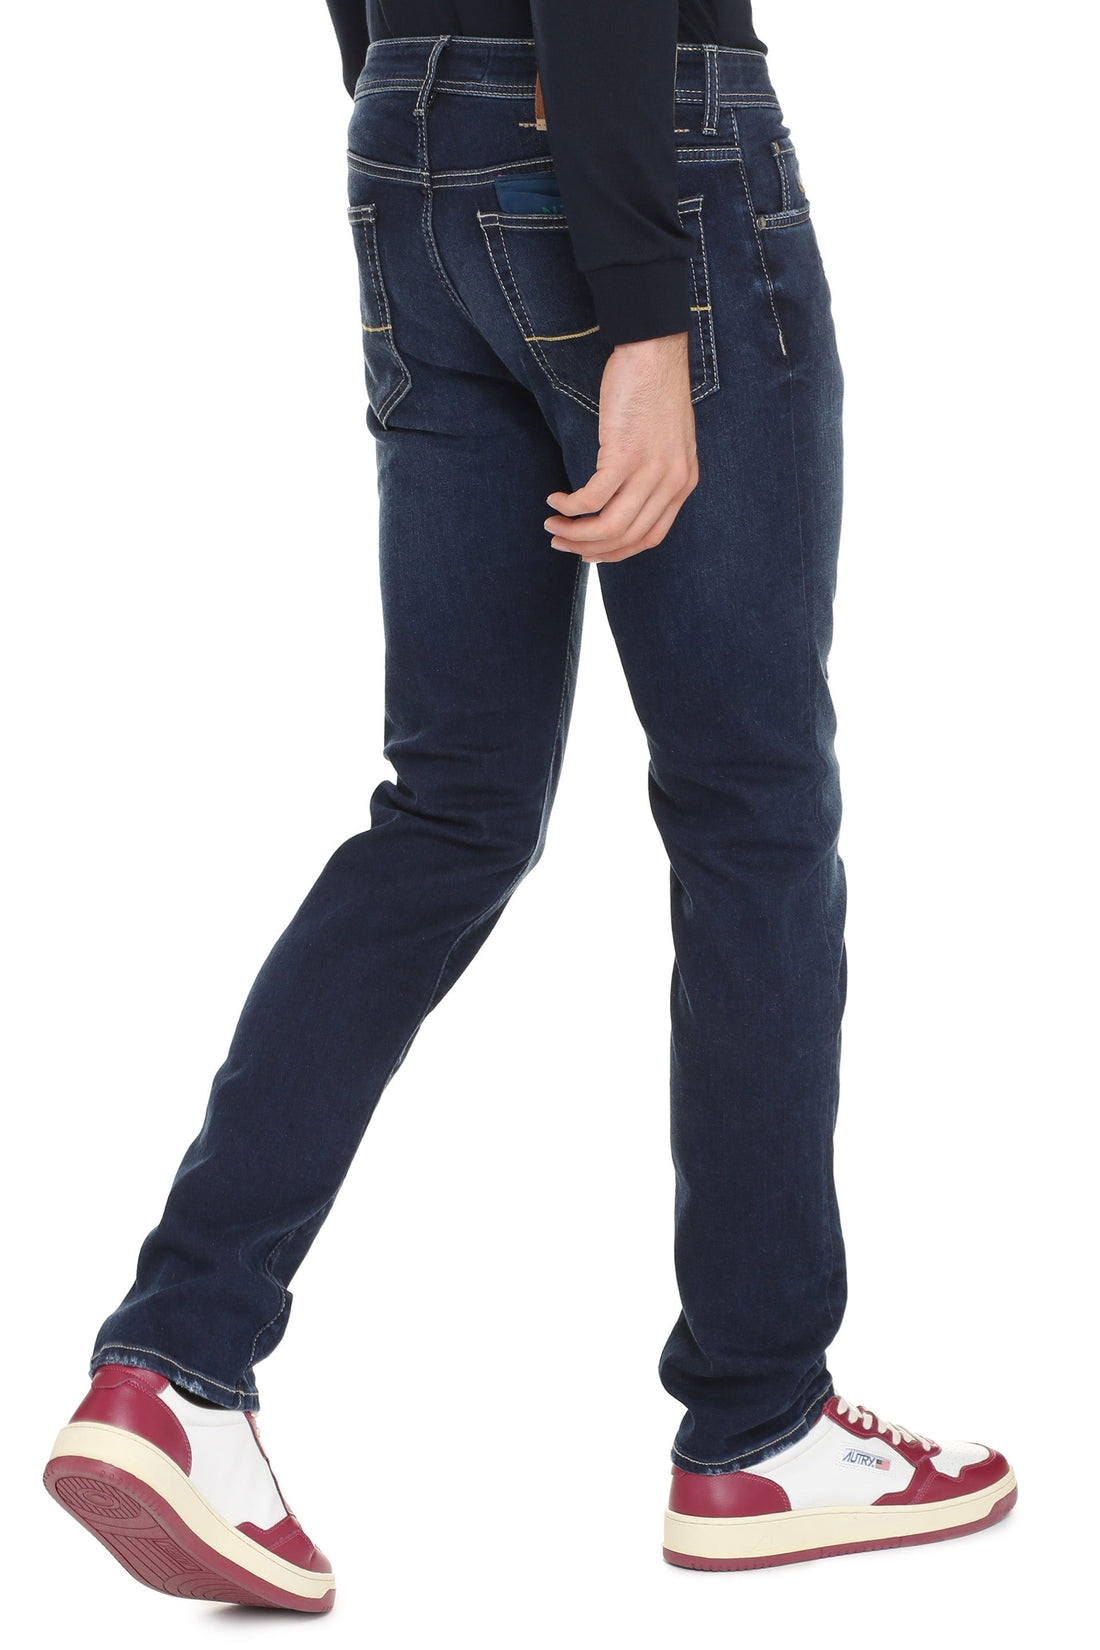 Jacob Cohen-OUTLET-SALE-Bard slim fit jeans-ARCHIVIST